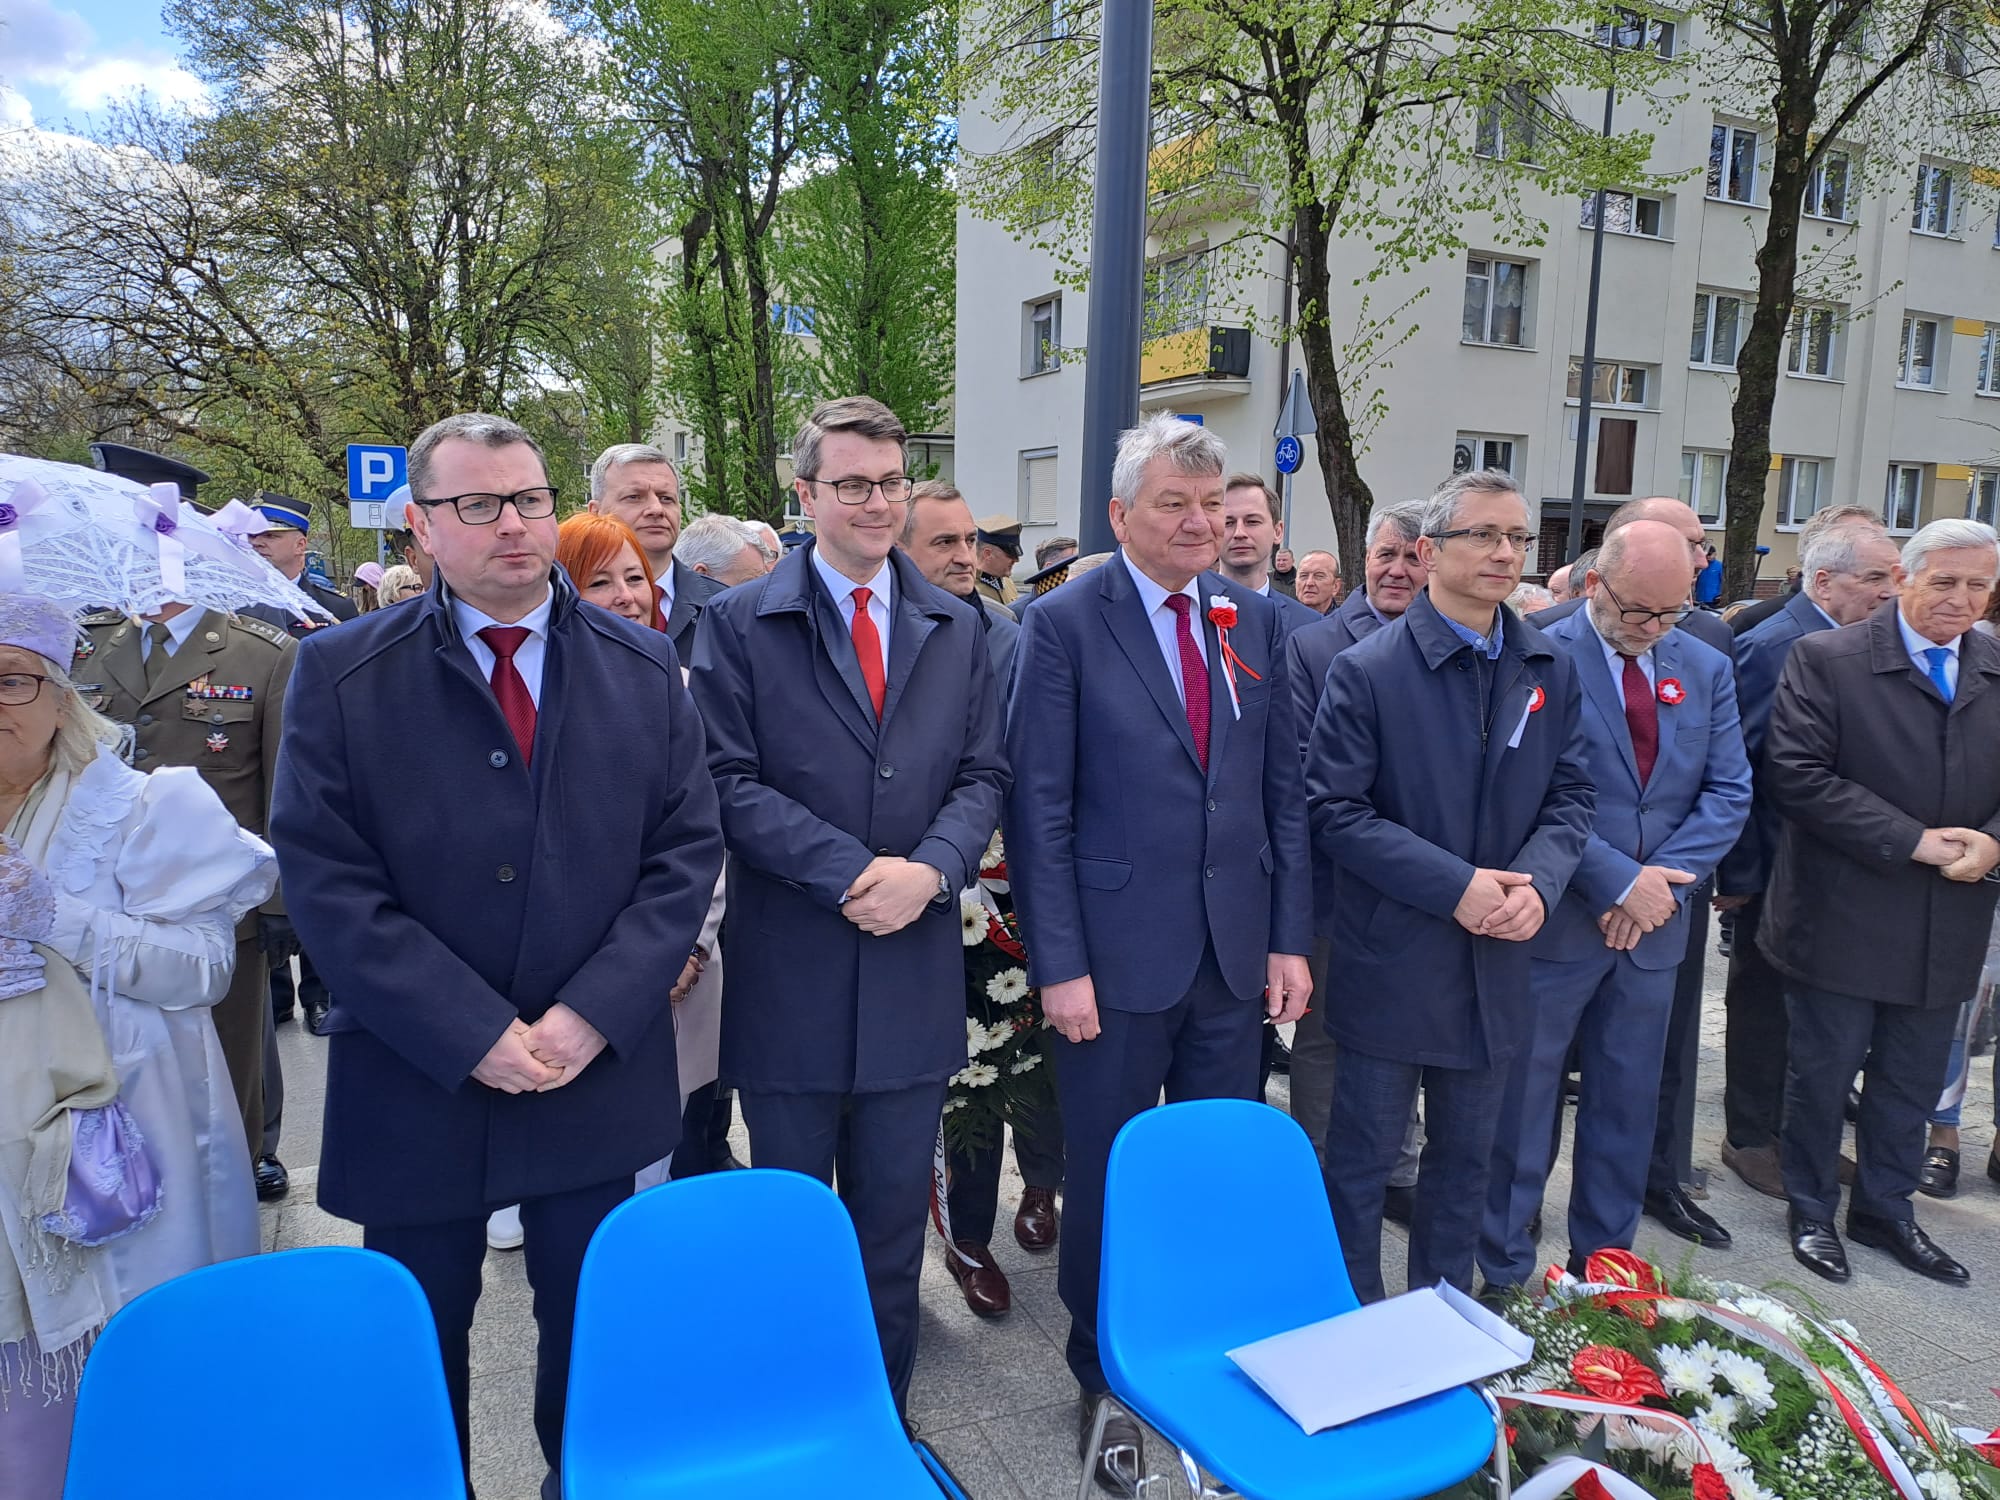 Dziś razem z lokalnymi samorządowcami, radnymi Prawa i Sprawiedliwości oraz współpracownikami, w patriotycznych nastrojach, poseł Piotr Müller uroczyście złożył kwiaty przy pomniku Jana Kilińskiego w Słupsku.